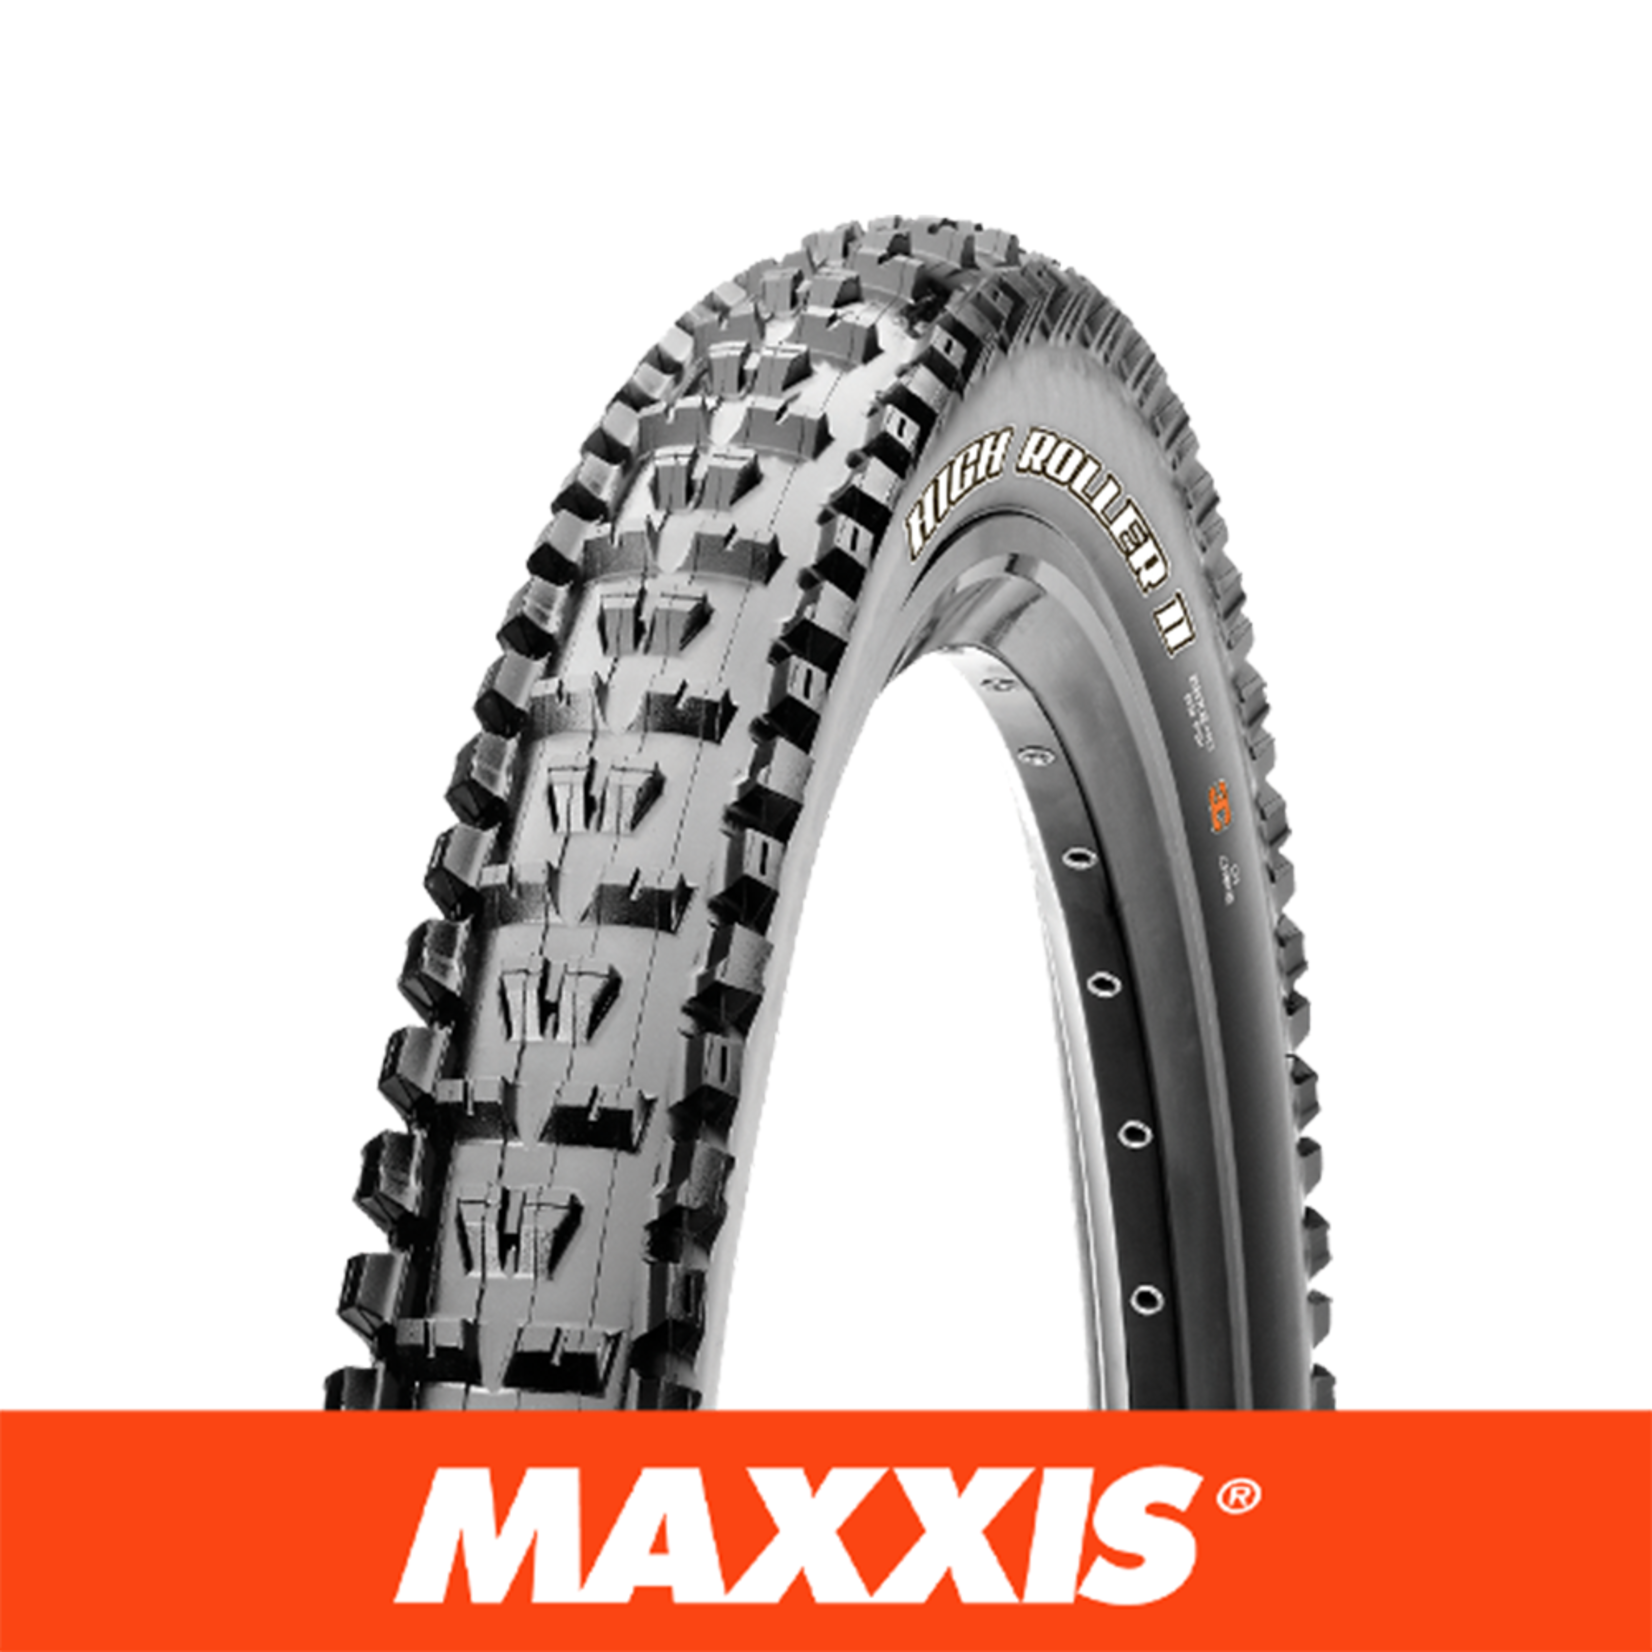 MAXXIS MAXXIS High Roller II - 27.5 X 2.40 WT Folding 60TPI EXO 3C MaxxTerra TR